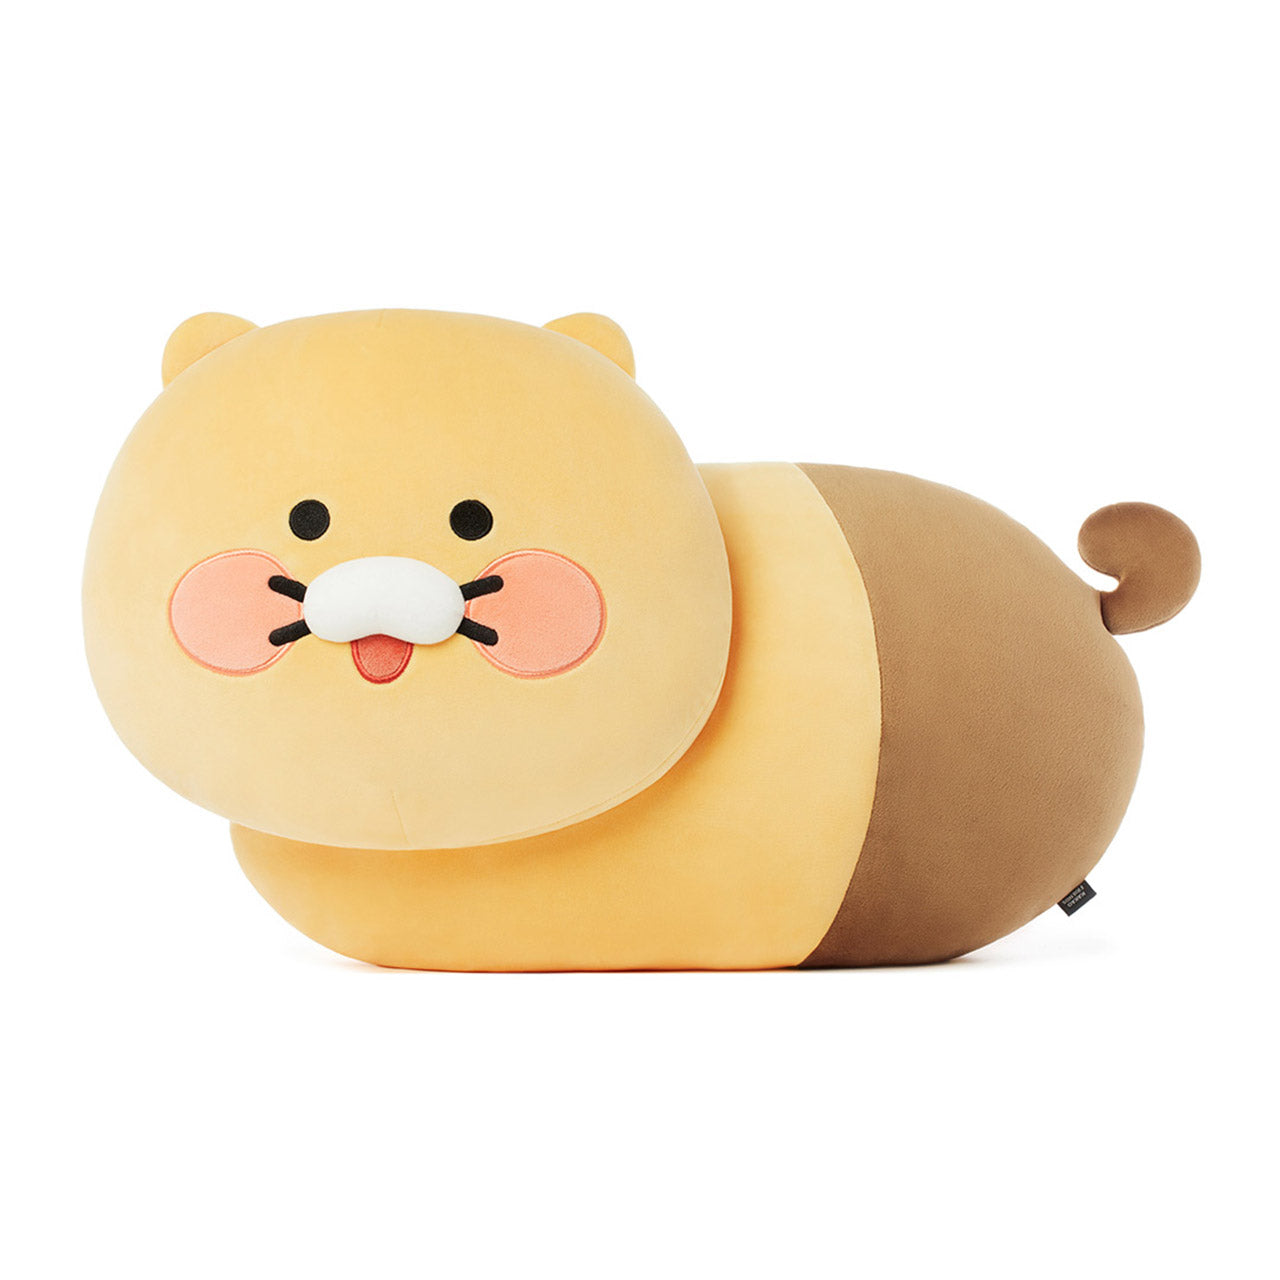 Choonsik Soft Plush Toy